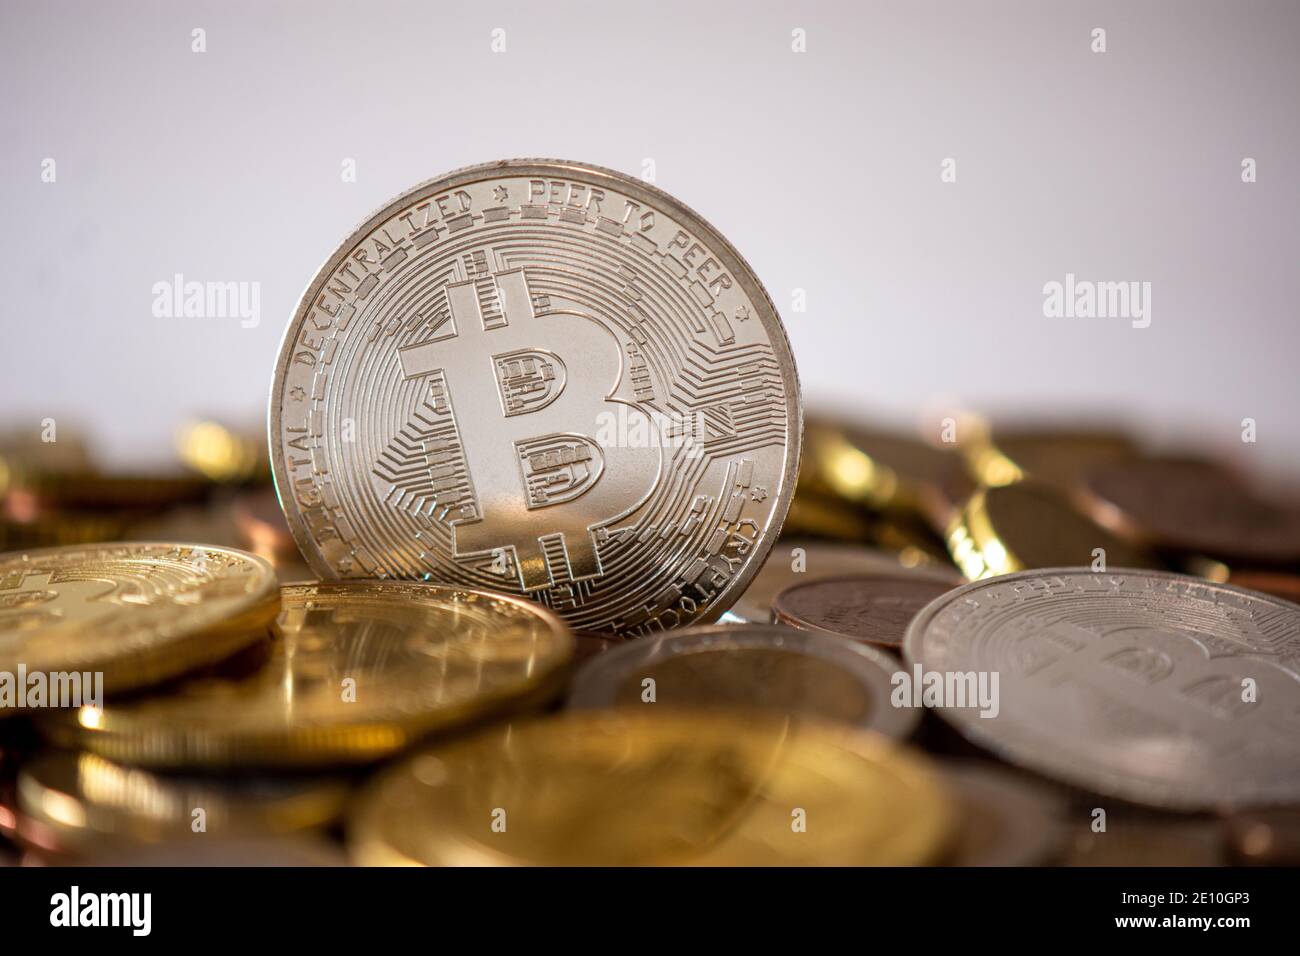 Eine silberne Bitcoin, die unter vielen verschwommenen Münzen steht. Bitcoin ist eine Kryptowährung, eine dezentrale digitale Währung ohne Zentralbank Stockfoto